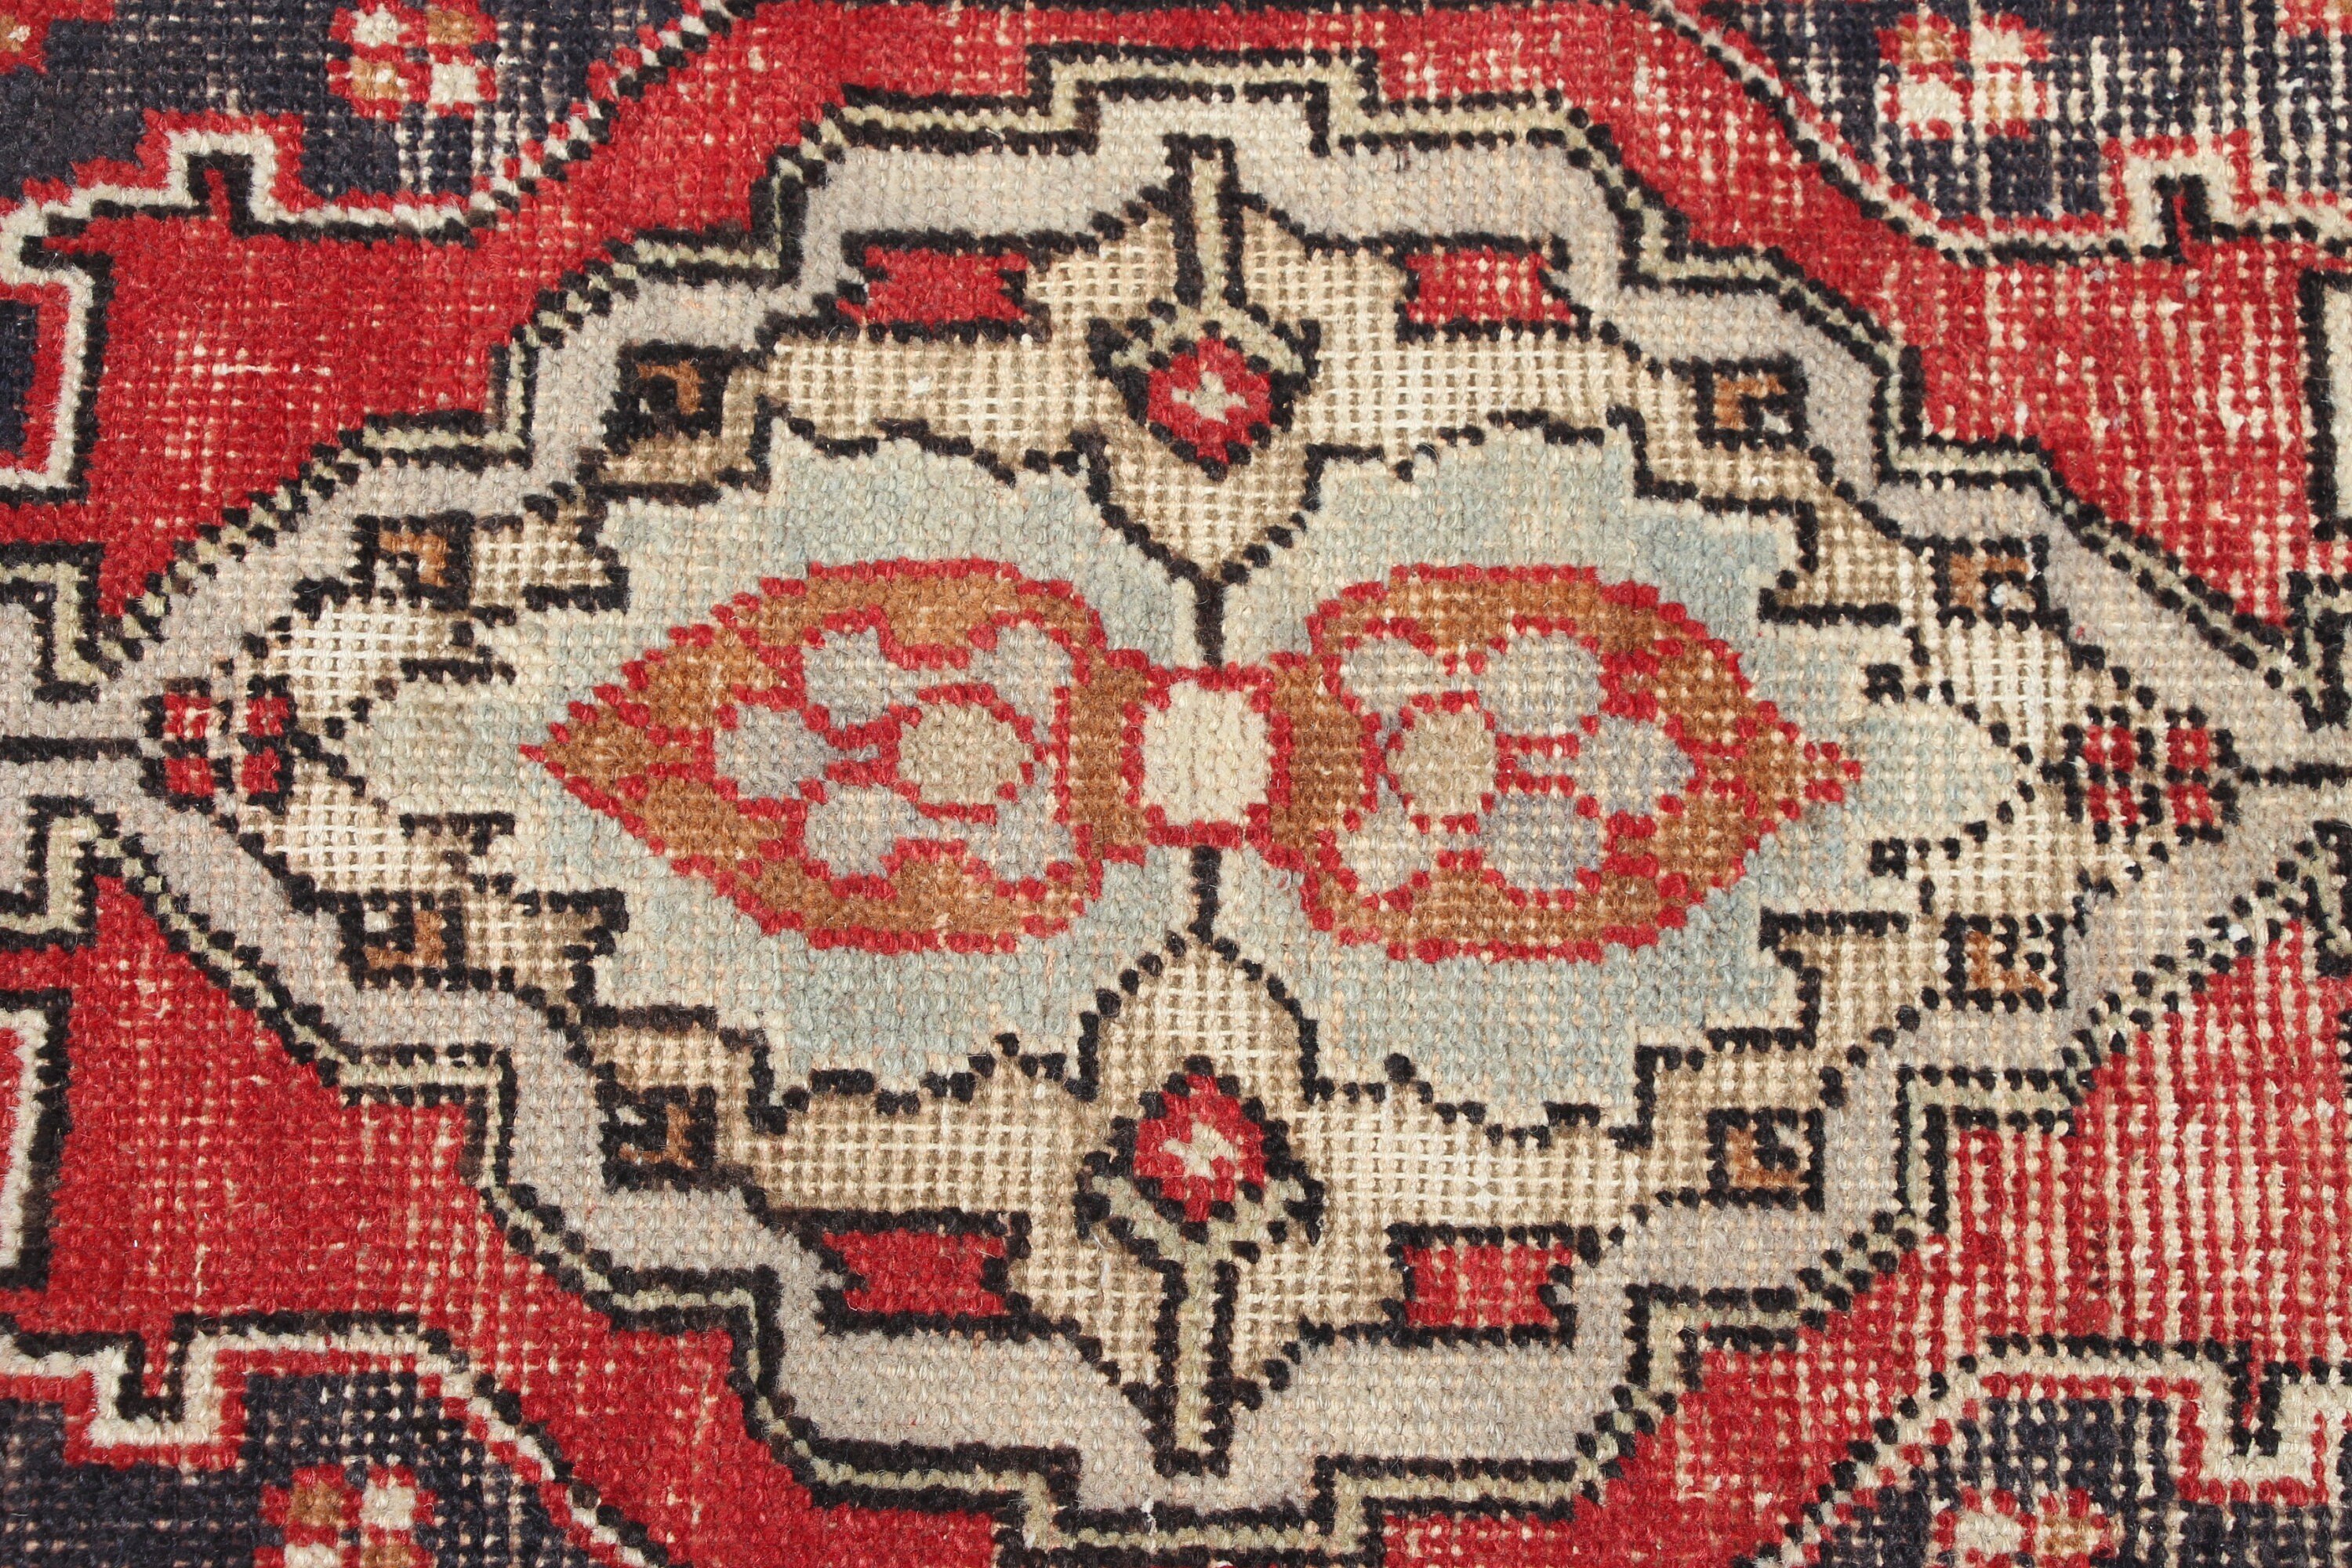 Turkish Rug, Bedroom Rug, Rugs for Bedroom, Nursery Rug, Old Rugs, Vintage Rug, Moroccan Rug, Red  1.4x2.6 ft Small Rug